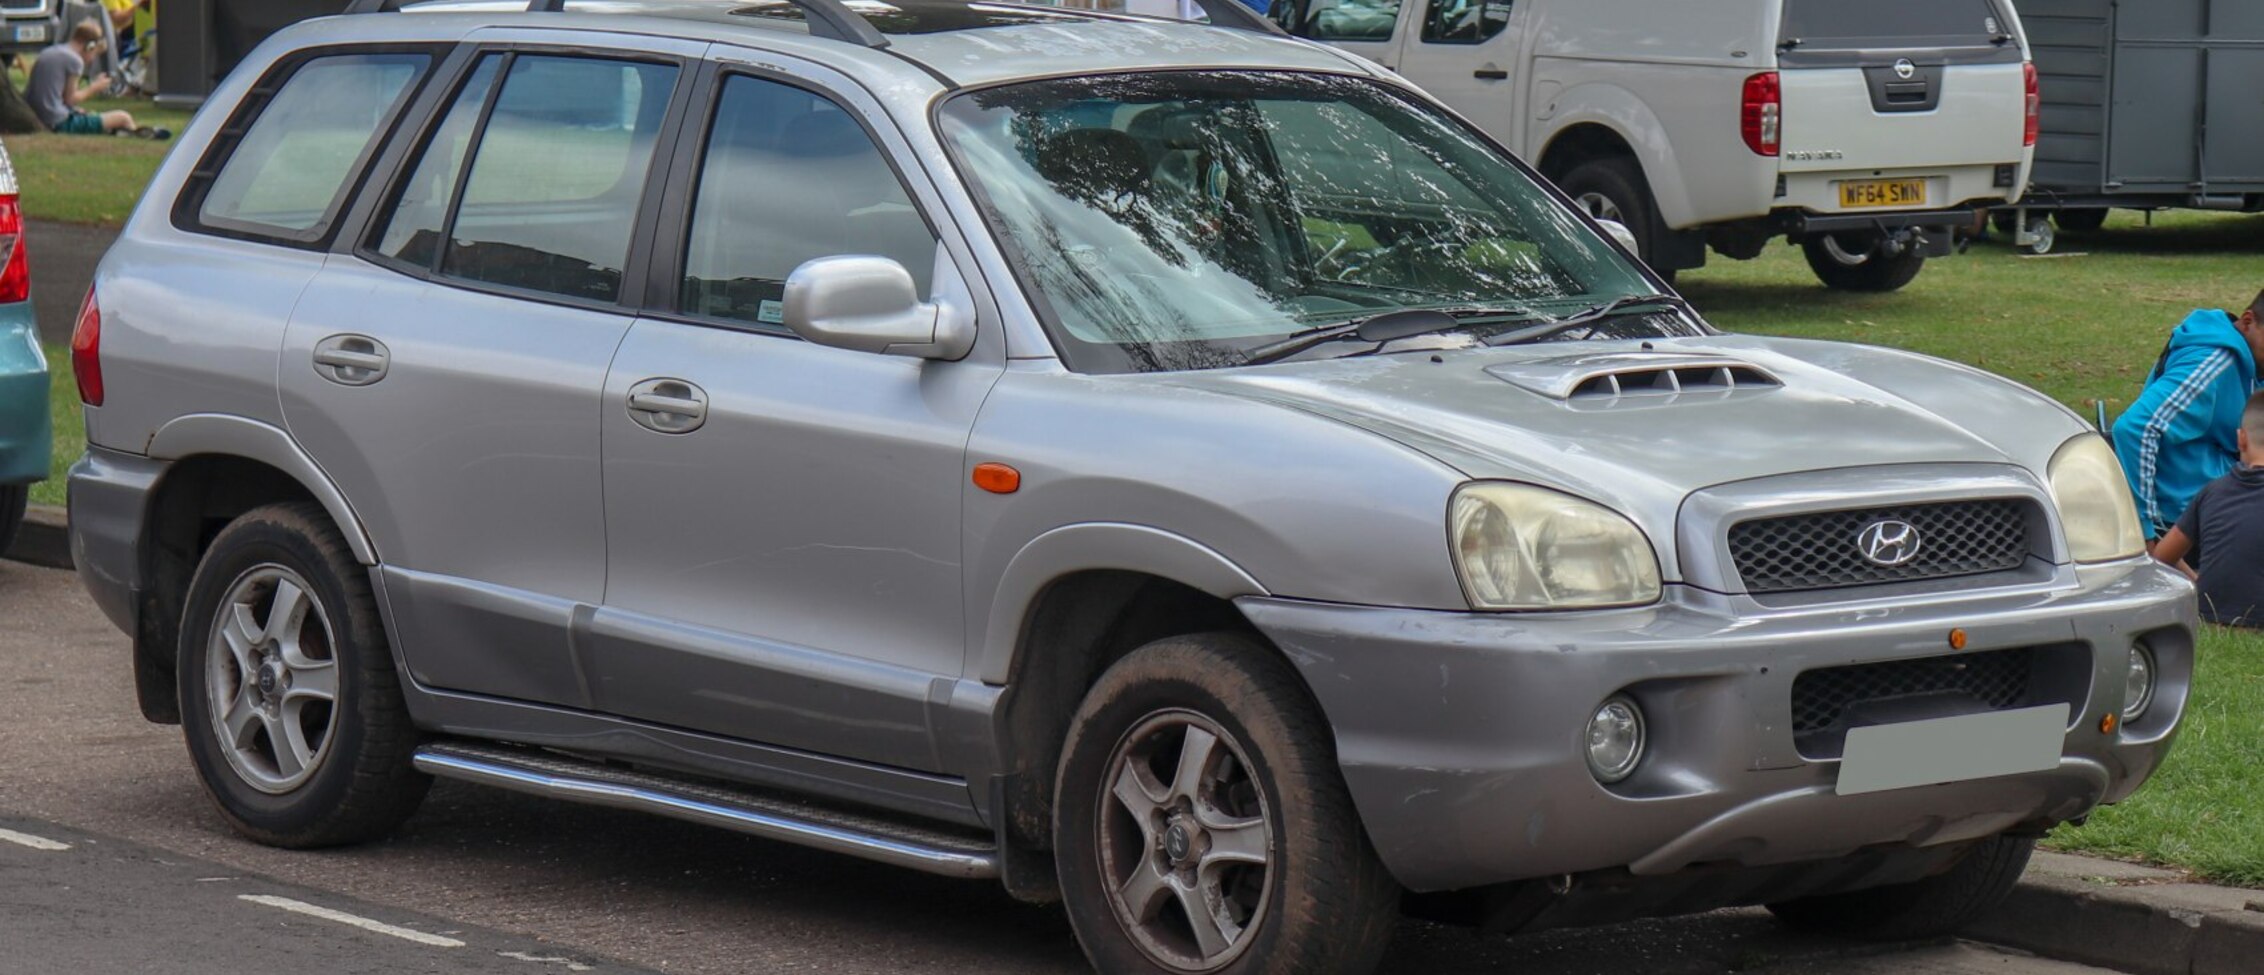 Hyundai Santa Fe I 2.4 i 16V 4WD (146 Hp) Automatic 2000, 2001, 2002, 2003, 2004, 2005, 2006 